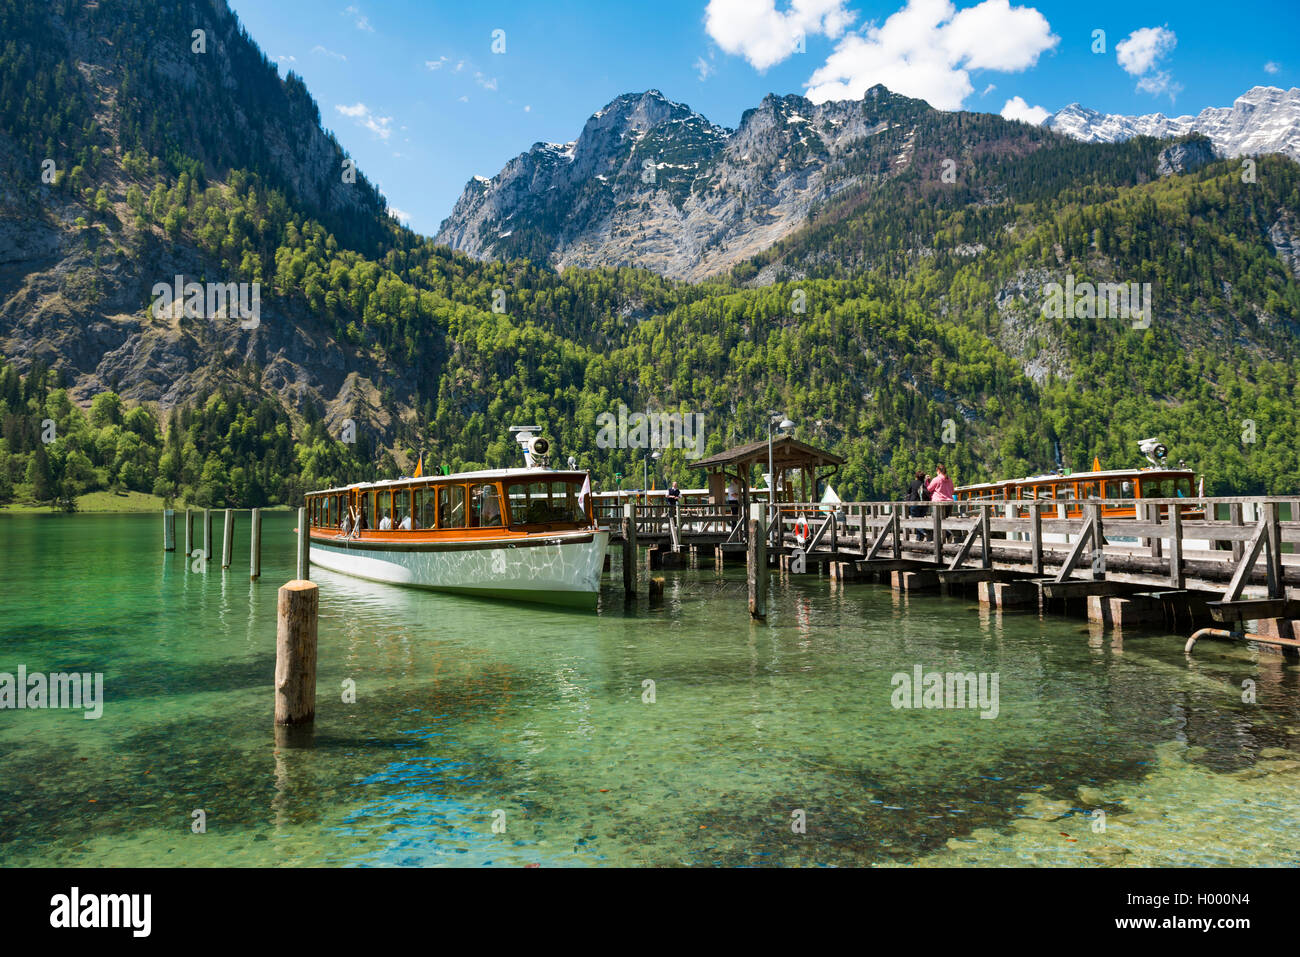 Schiff am Pier, Salet am Königssee, Berchtesgadener Land, Oberbayern, Bayern, Deutschland Stockfoto